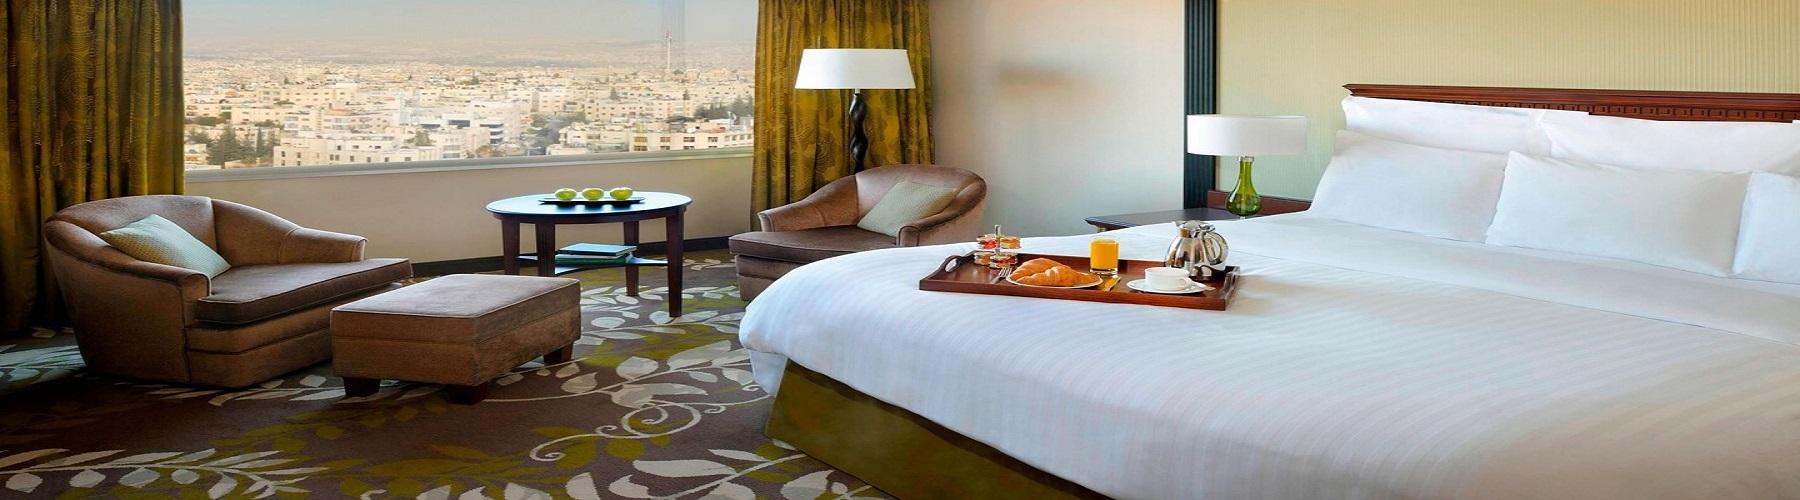 Забронировать номер в отеле Amman Marriott Hotel